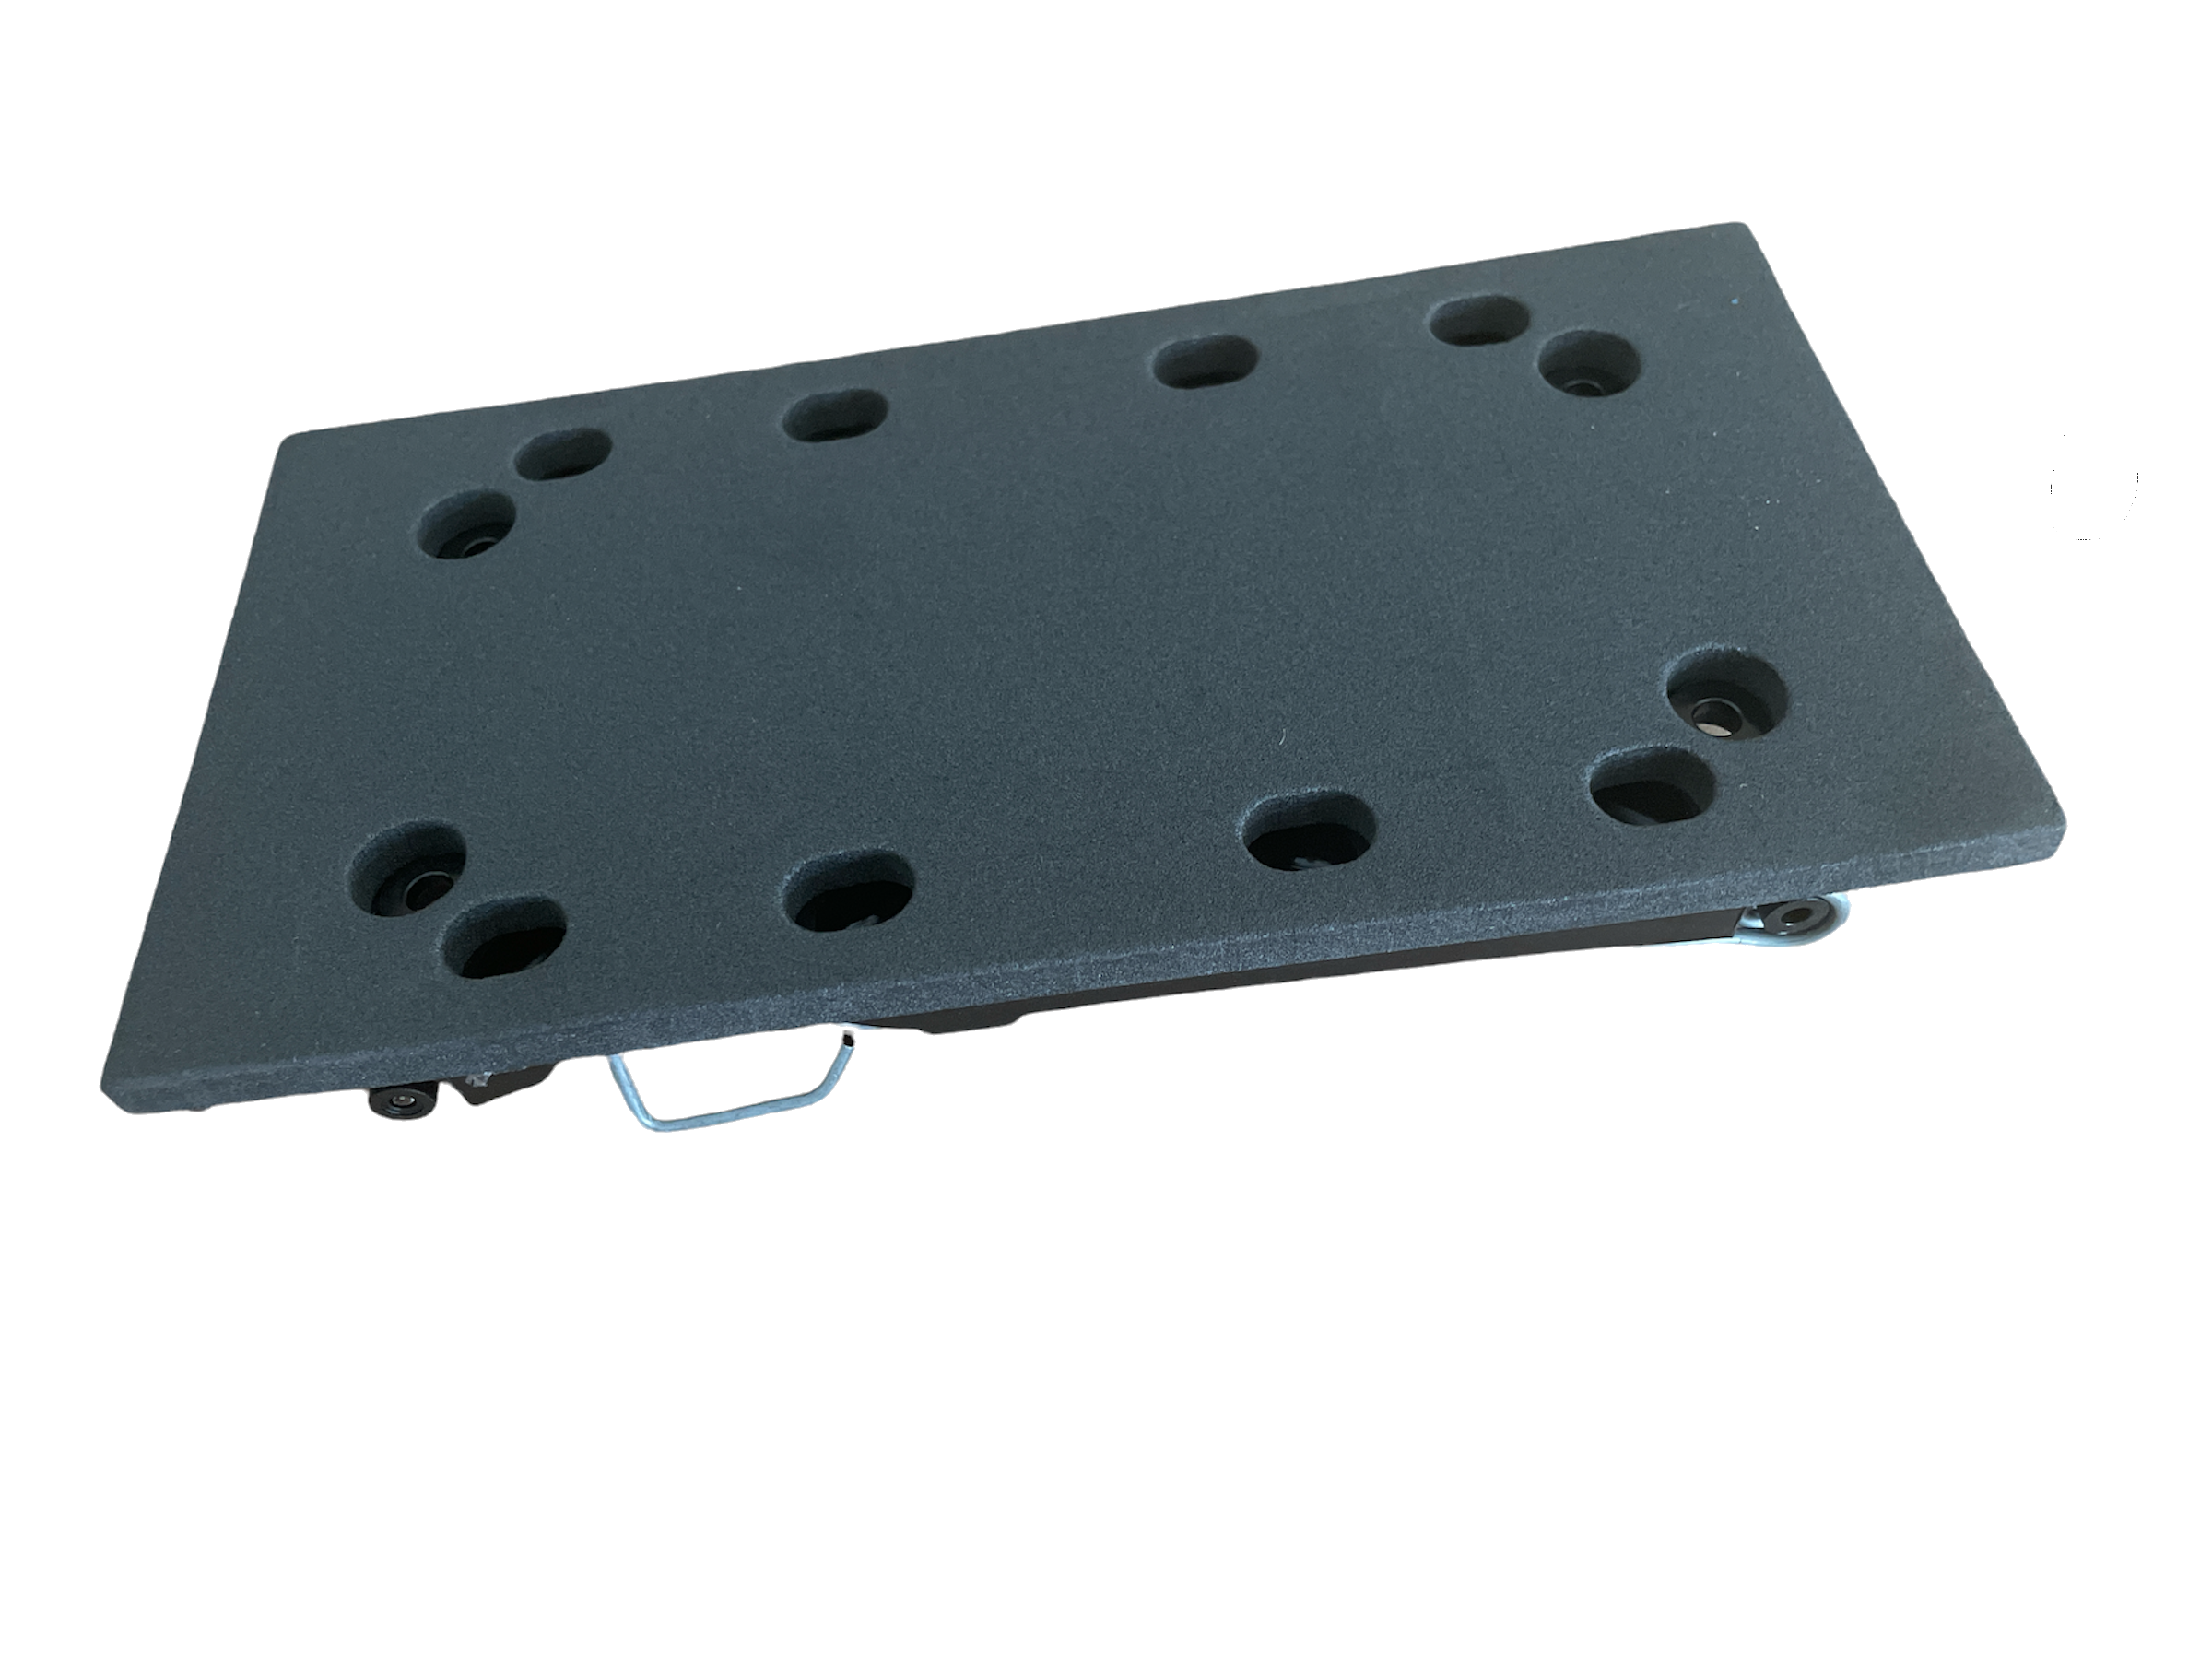 Bosch Schleifplatte für Schwingschleifer 93 x 182 mm für PSS 190 AC & PSS 200 AC (mit Klemmfunktion)